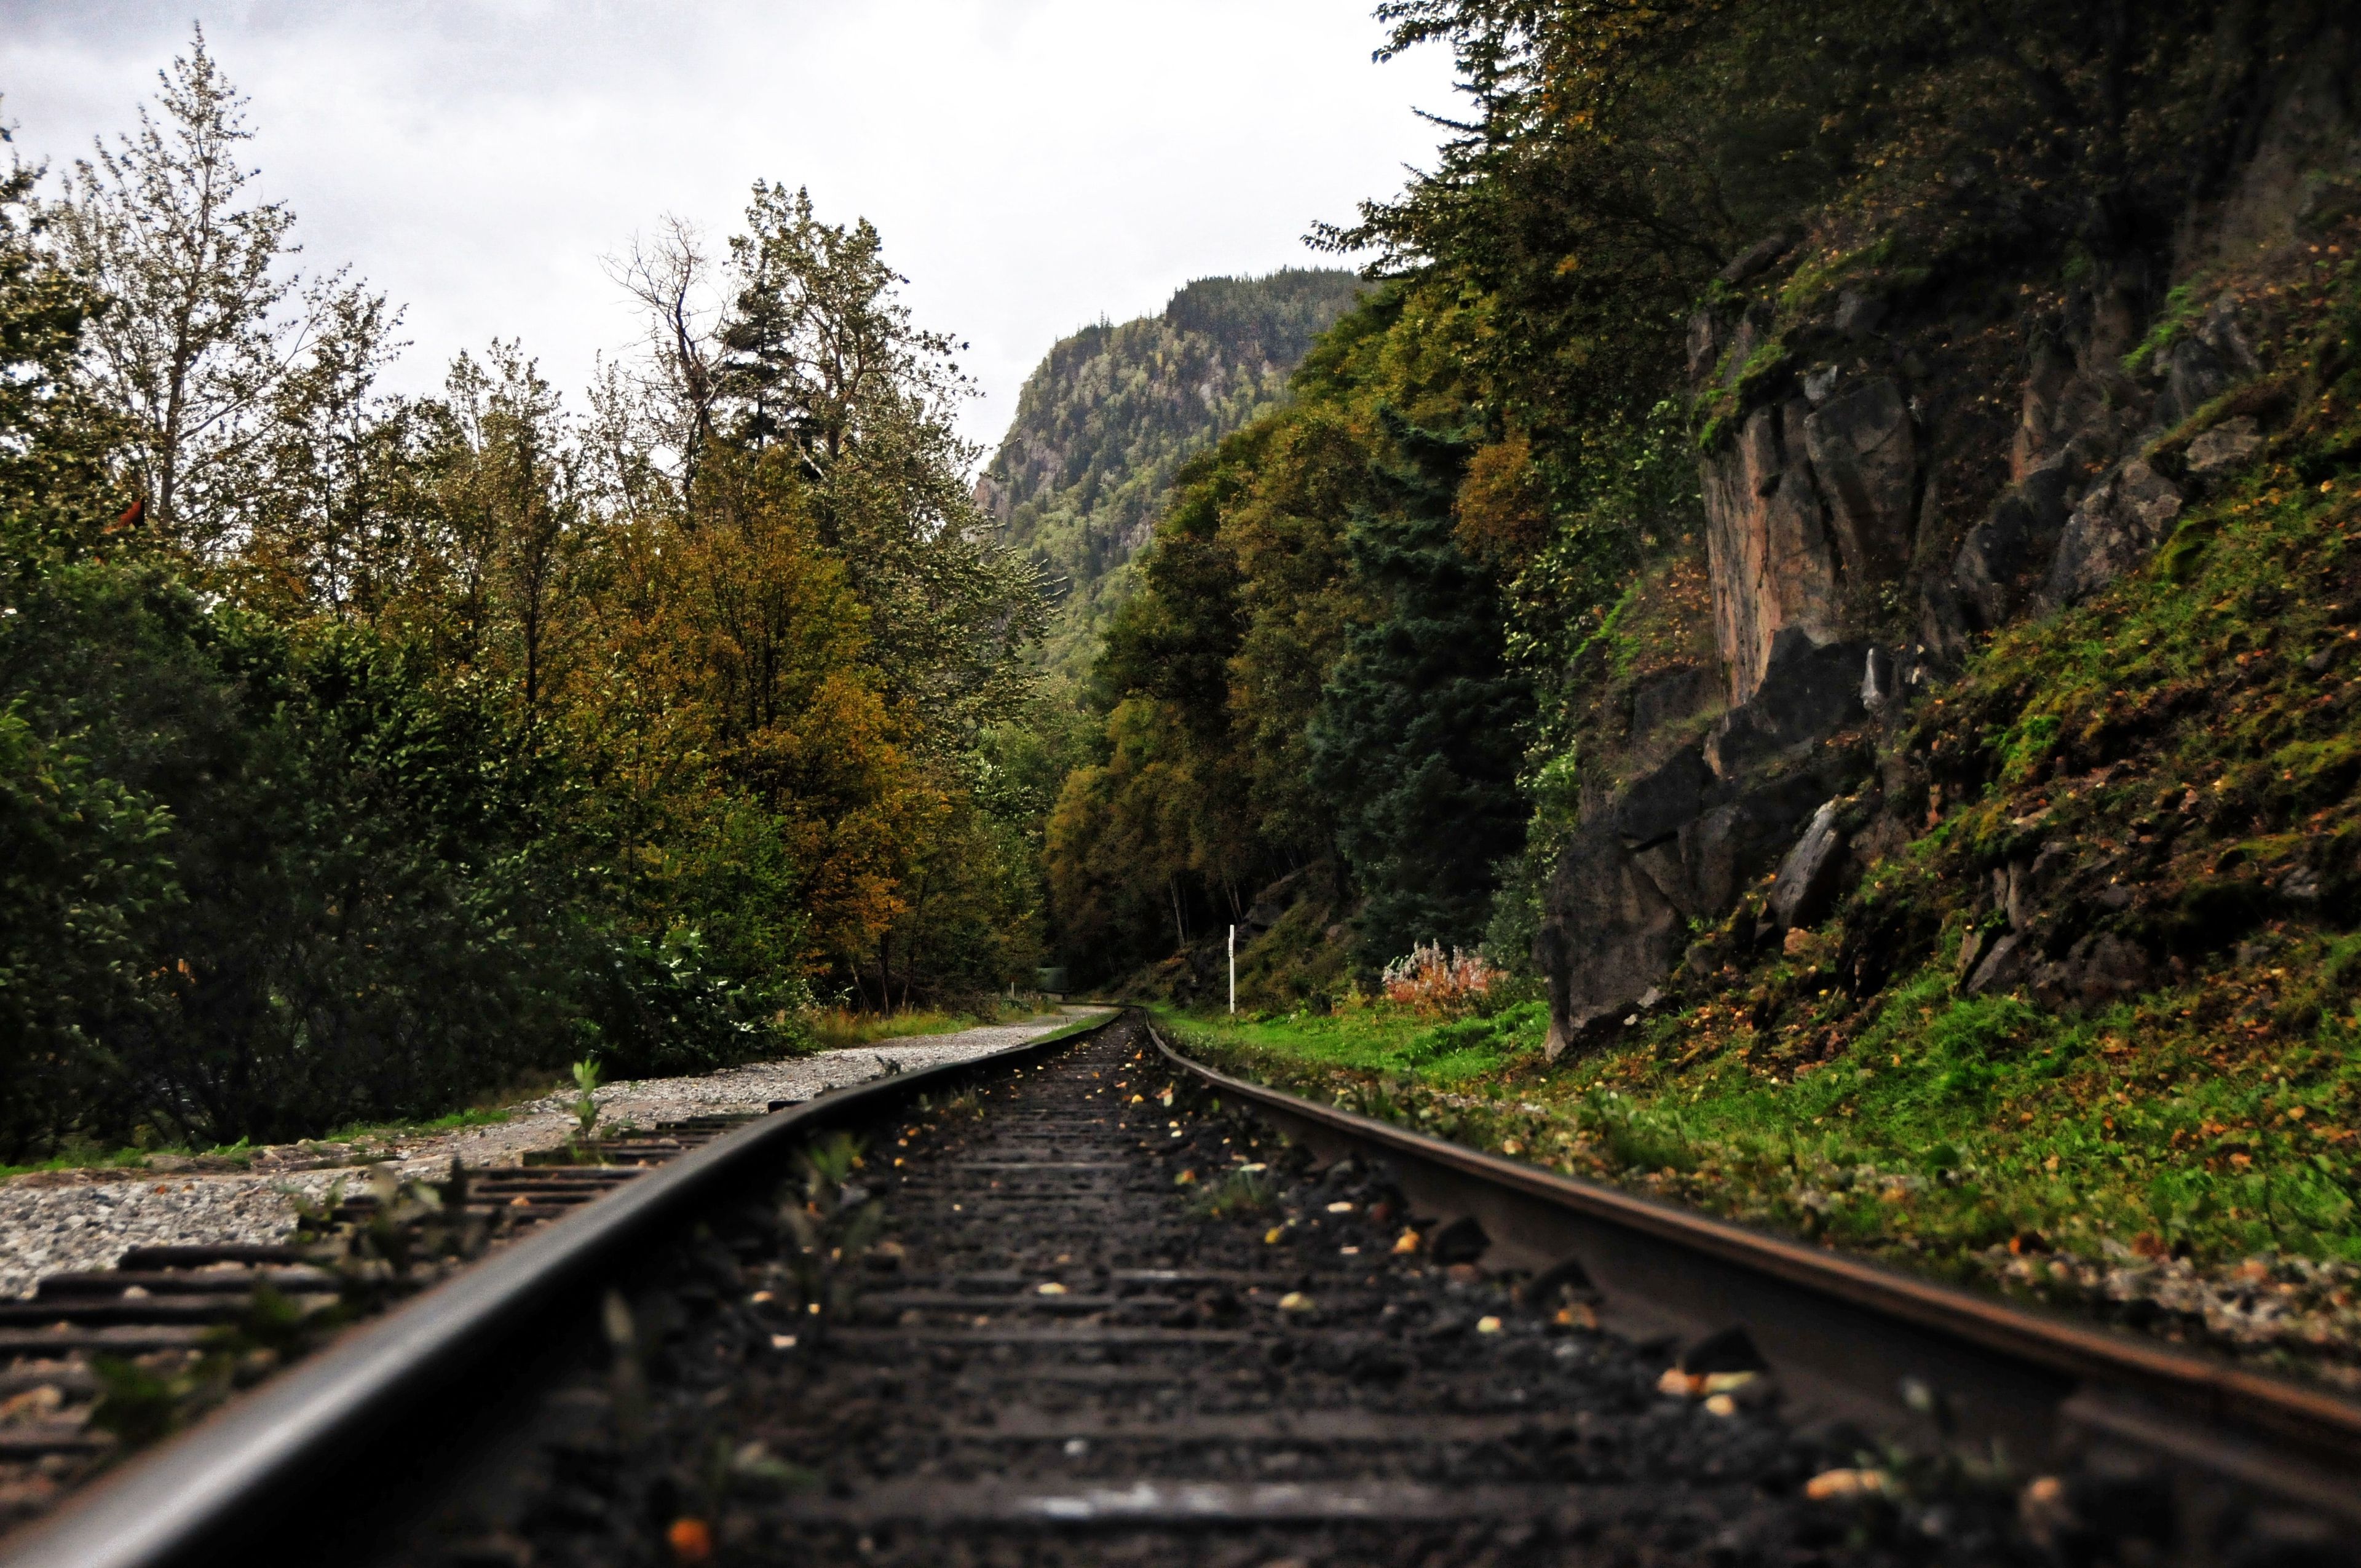 A railroad track that runs through mountains.